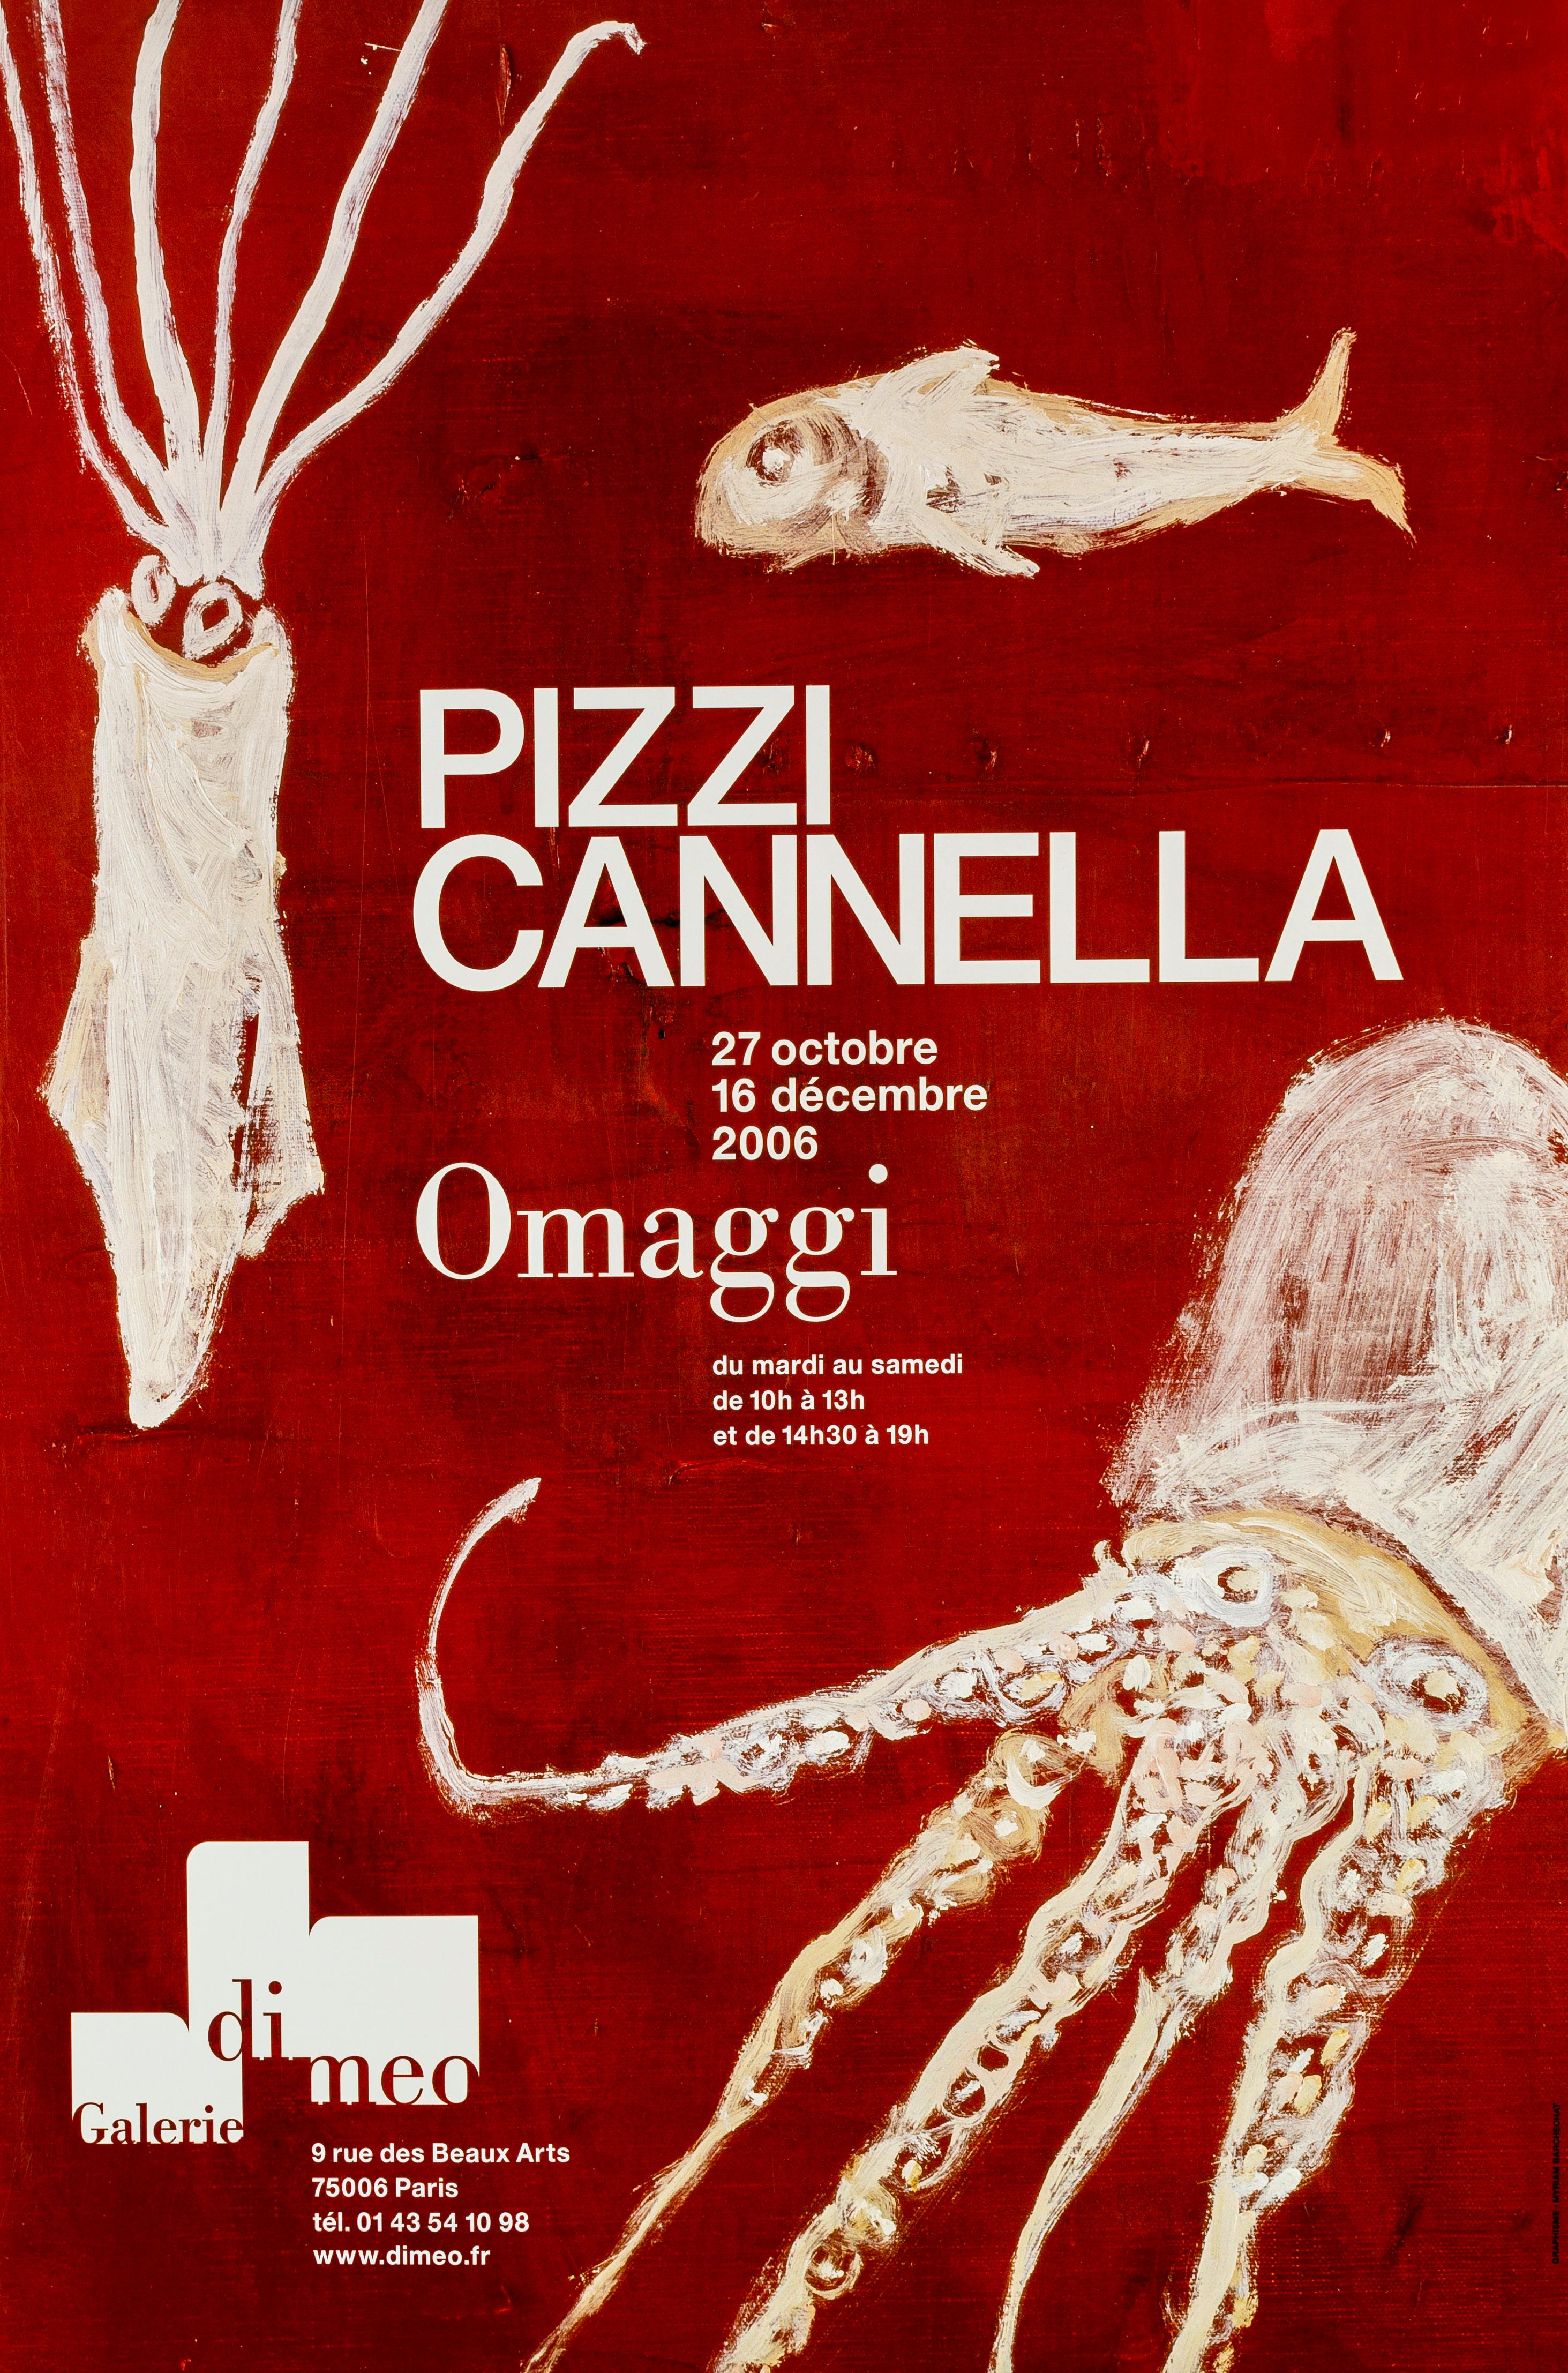 Cannella-Ausstellungsplakat von Pizzi – 2006